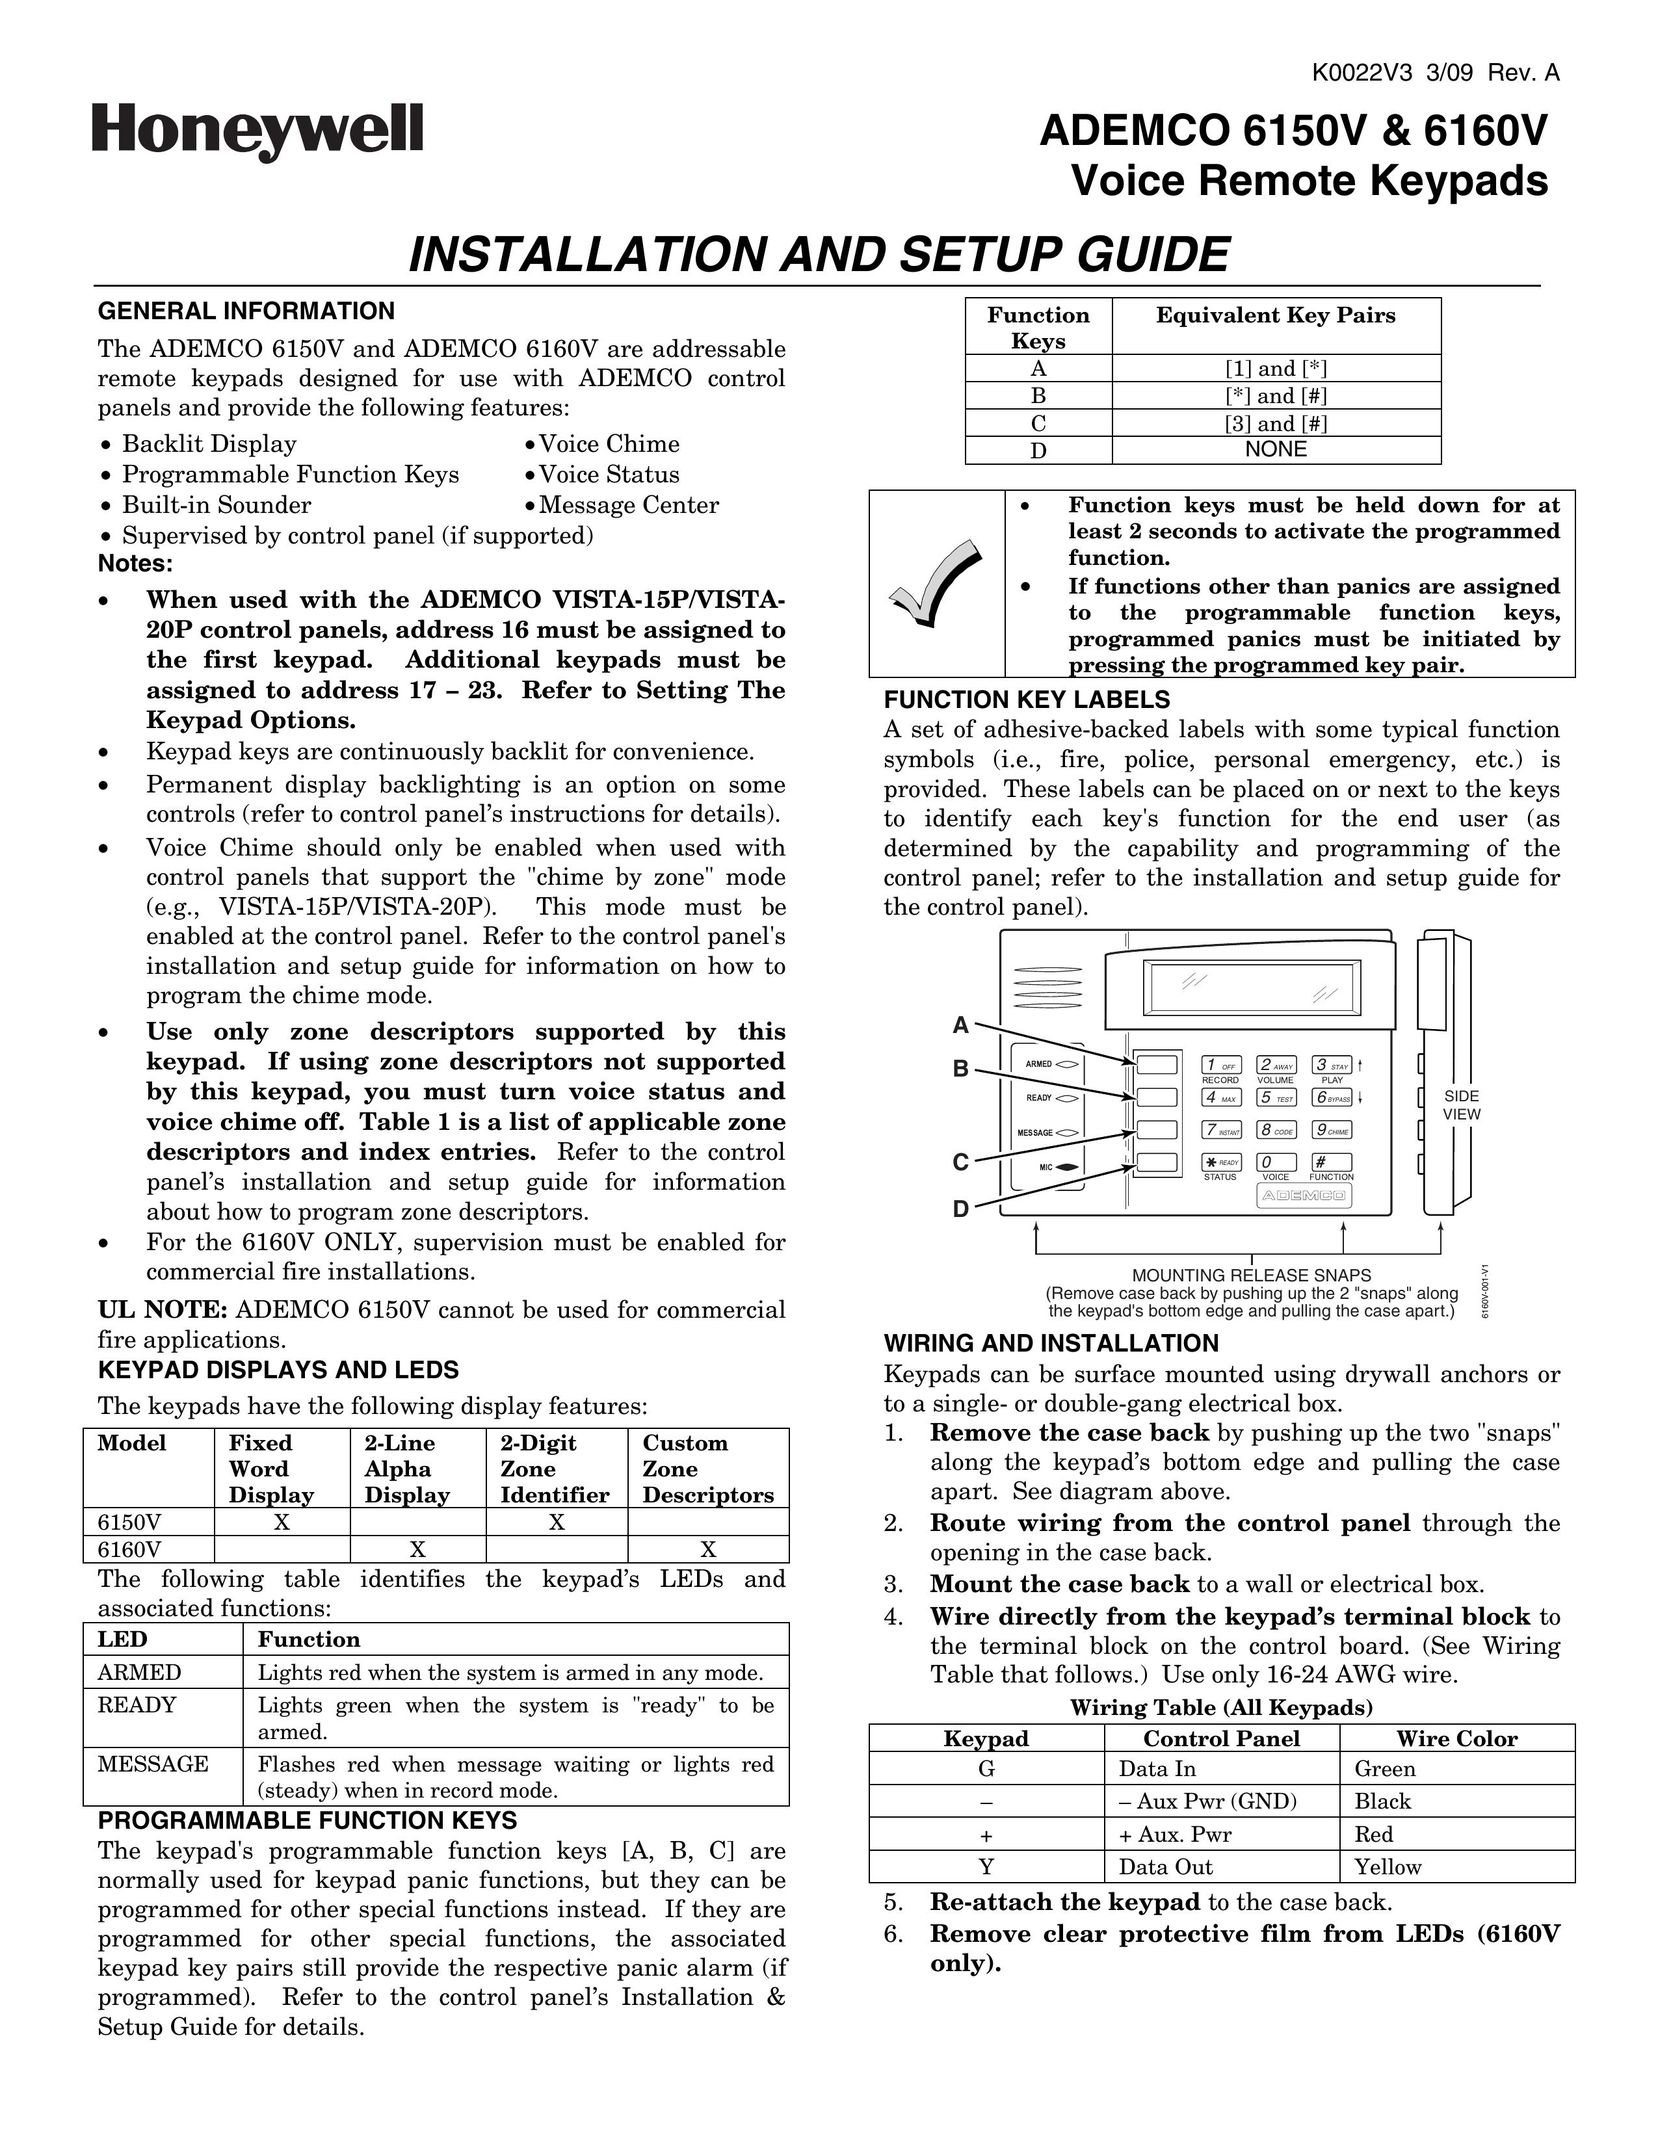 Honeywell 6160V Door User Manual